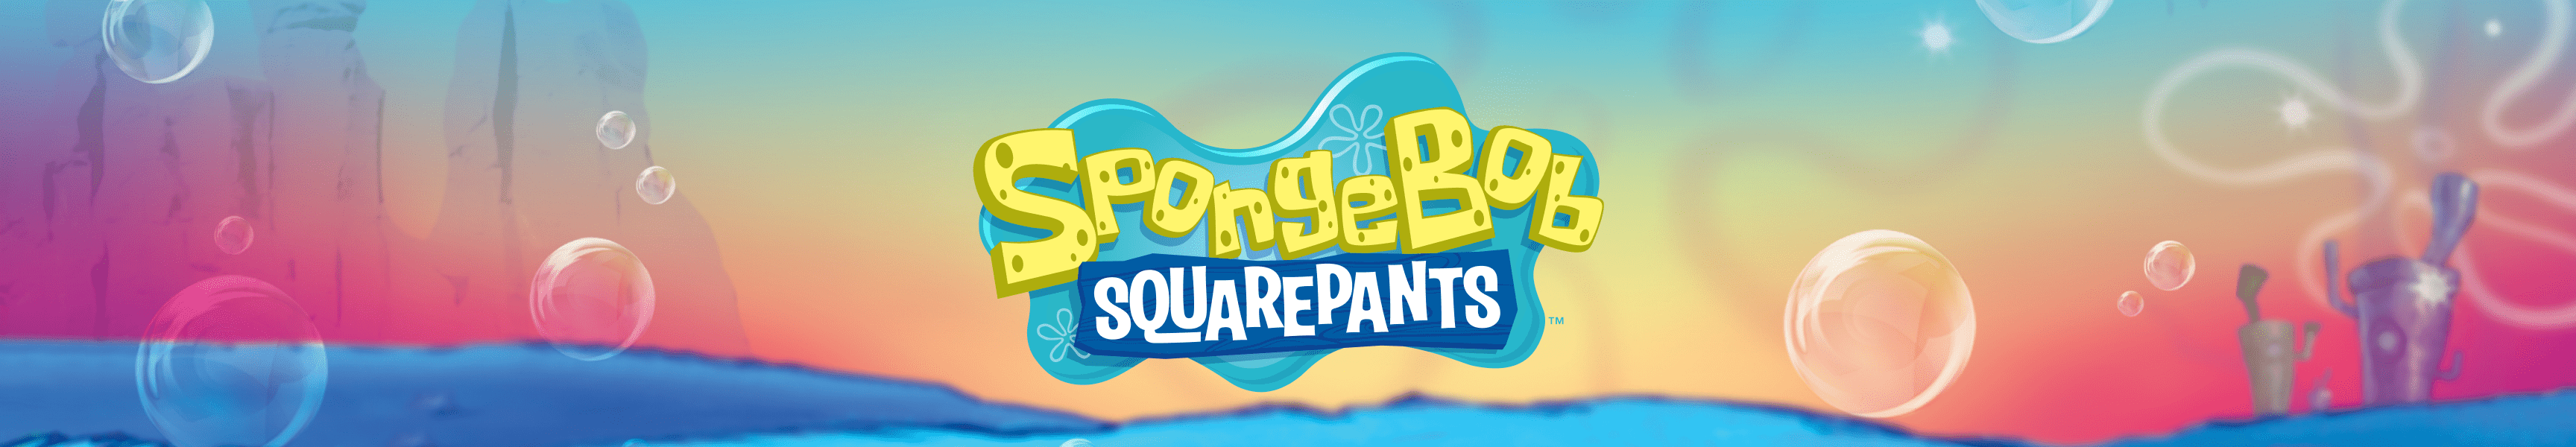 SpongeBob SquarePants Fun in the Sun